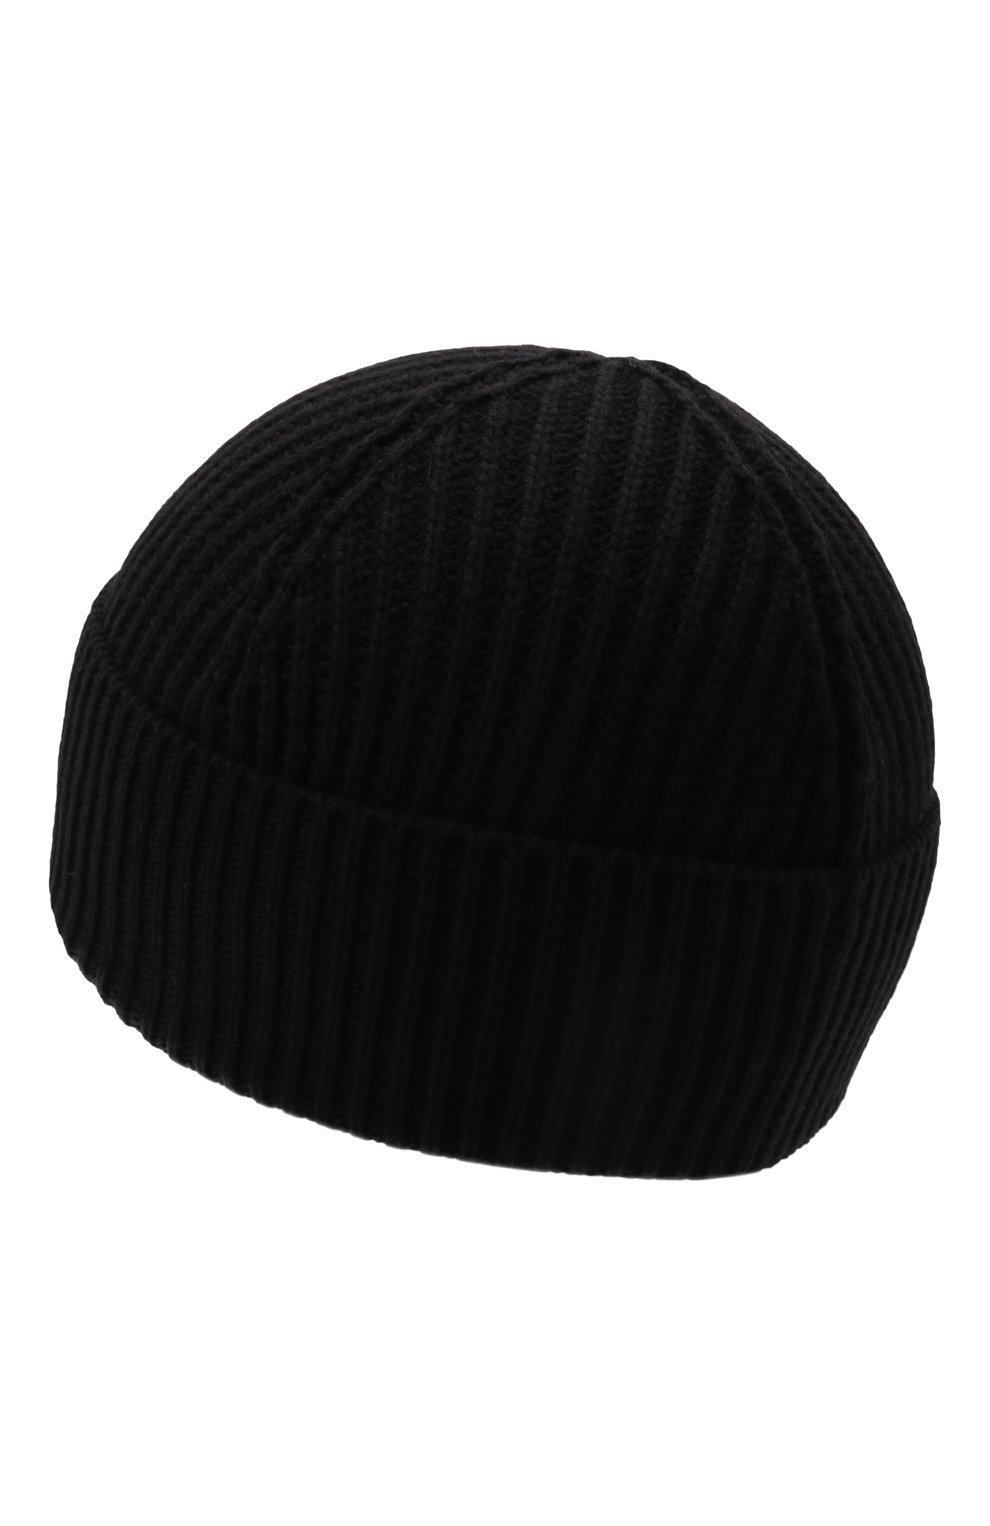 Детского шапка из шерсти и хлопка DSQUARED2 черного цвета, арт. DQ0452-D00WC | Фото 2 (Материал: Текстиль, Шерсть, Хлопок)